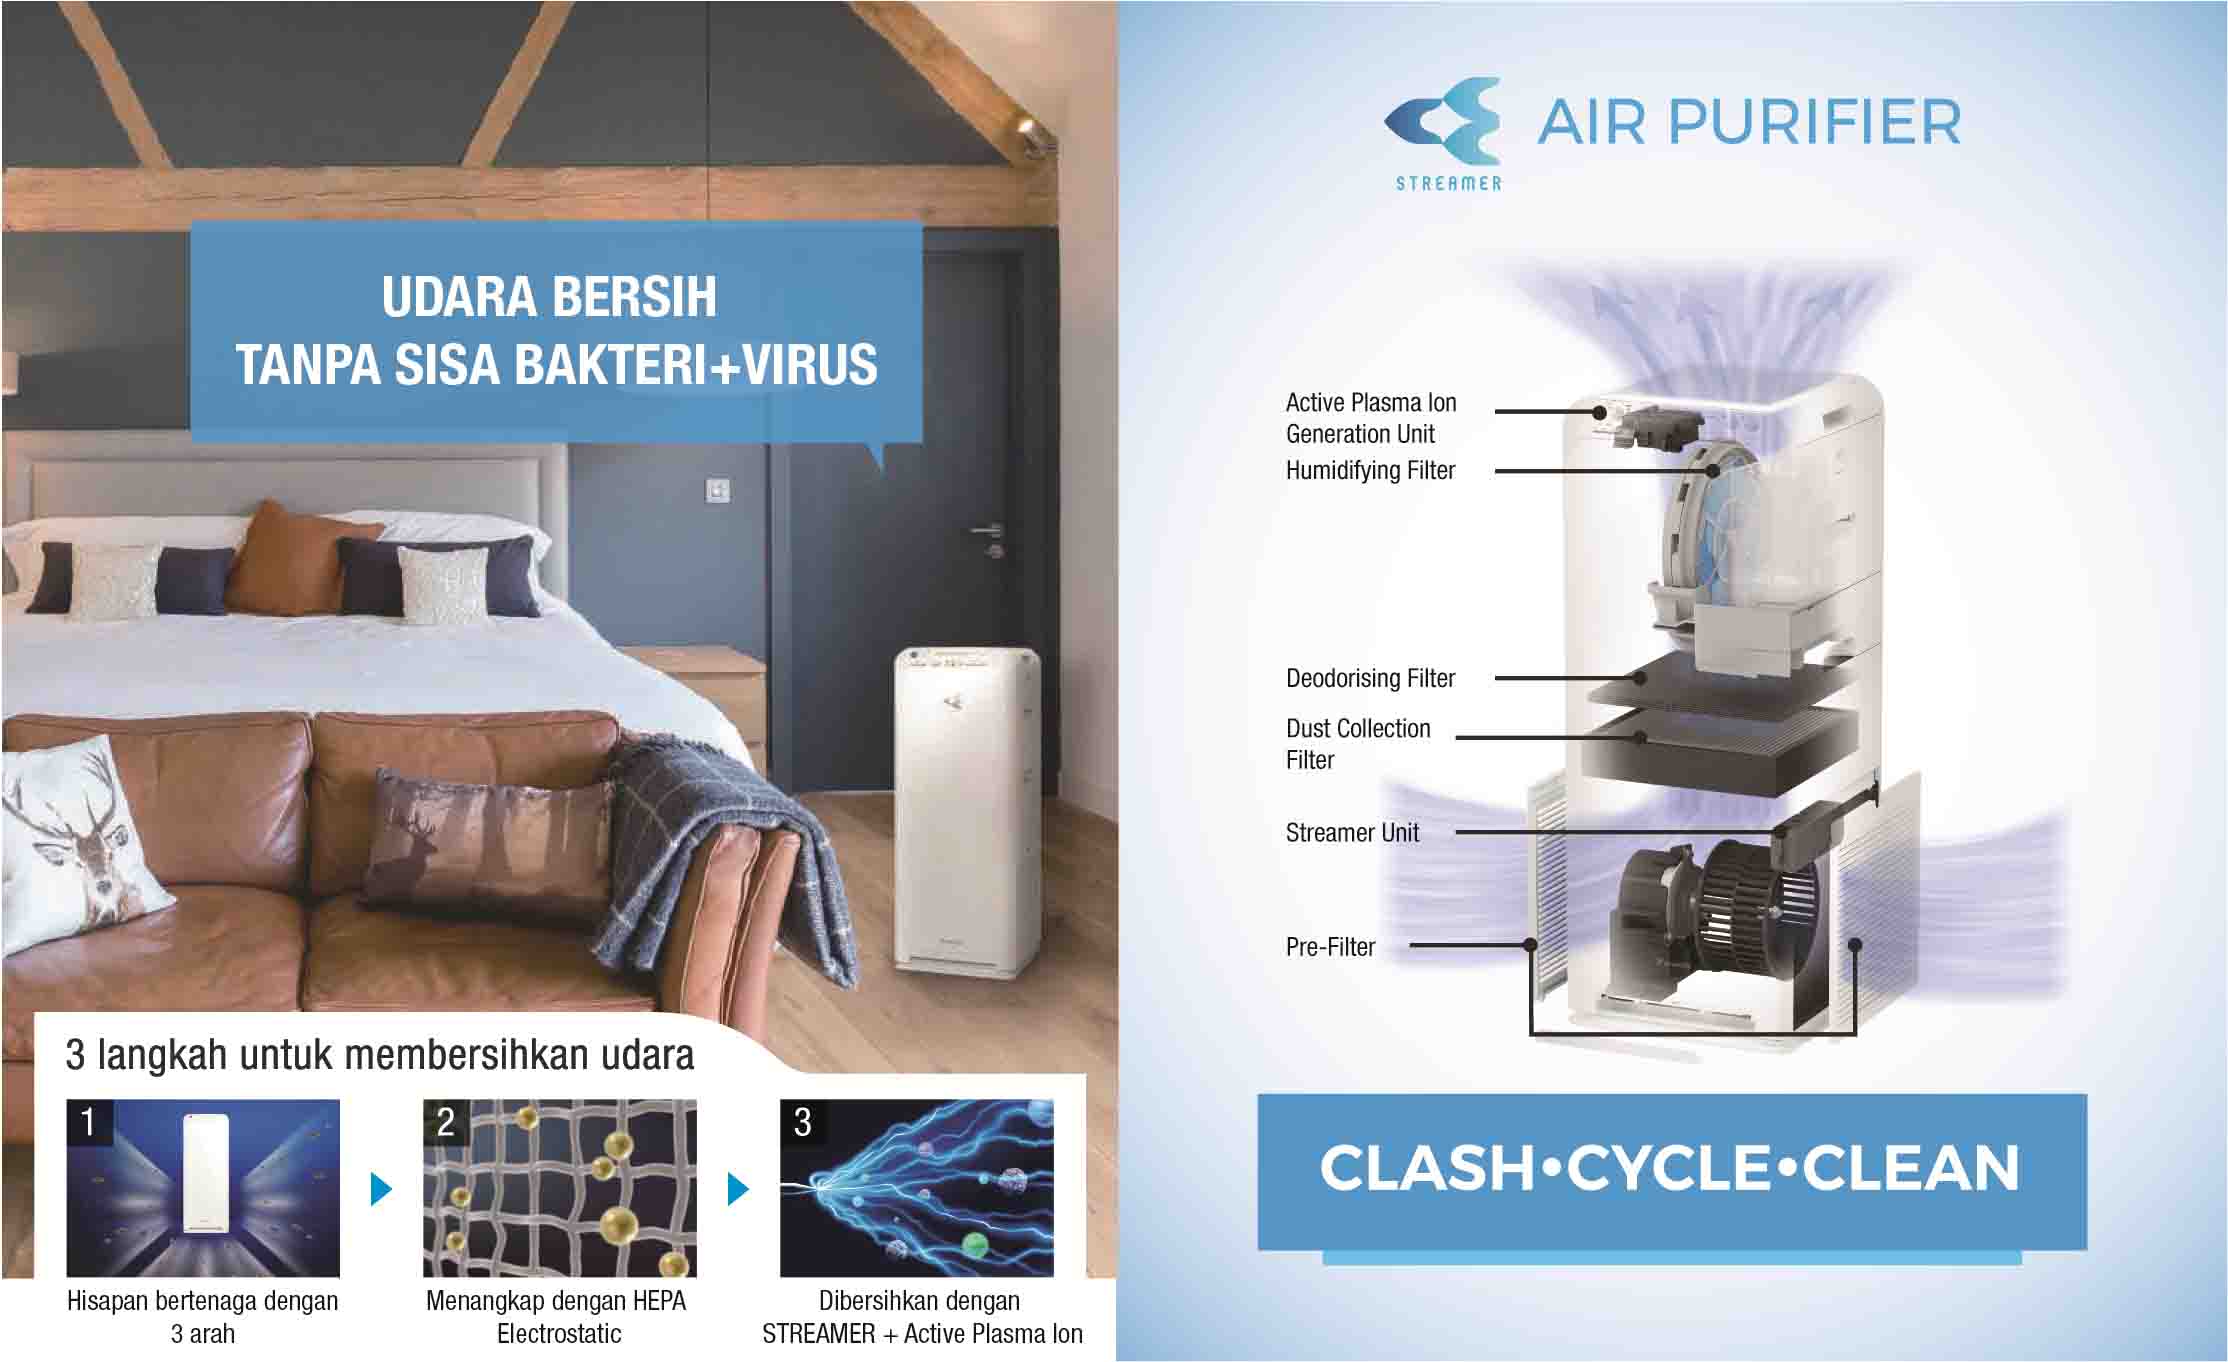 Teknologi Streamer dan Ion Daikin Air Purifier Produk Andalan Di Masa Pandemi Covid-19